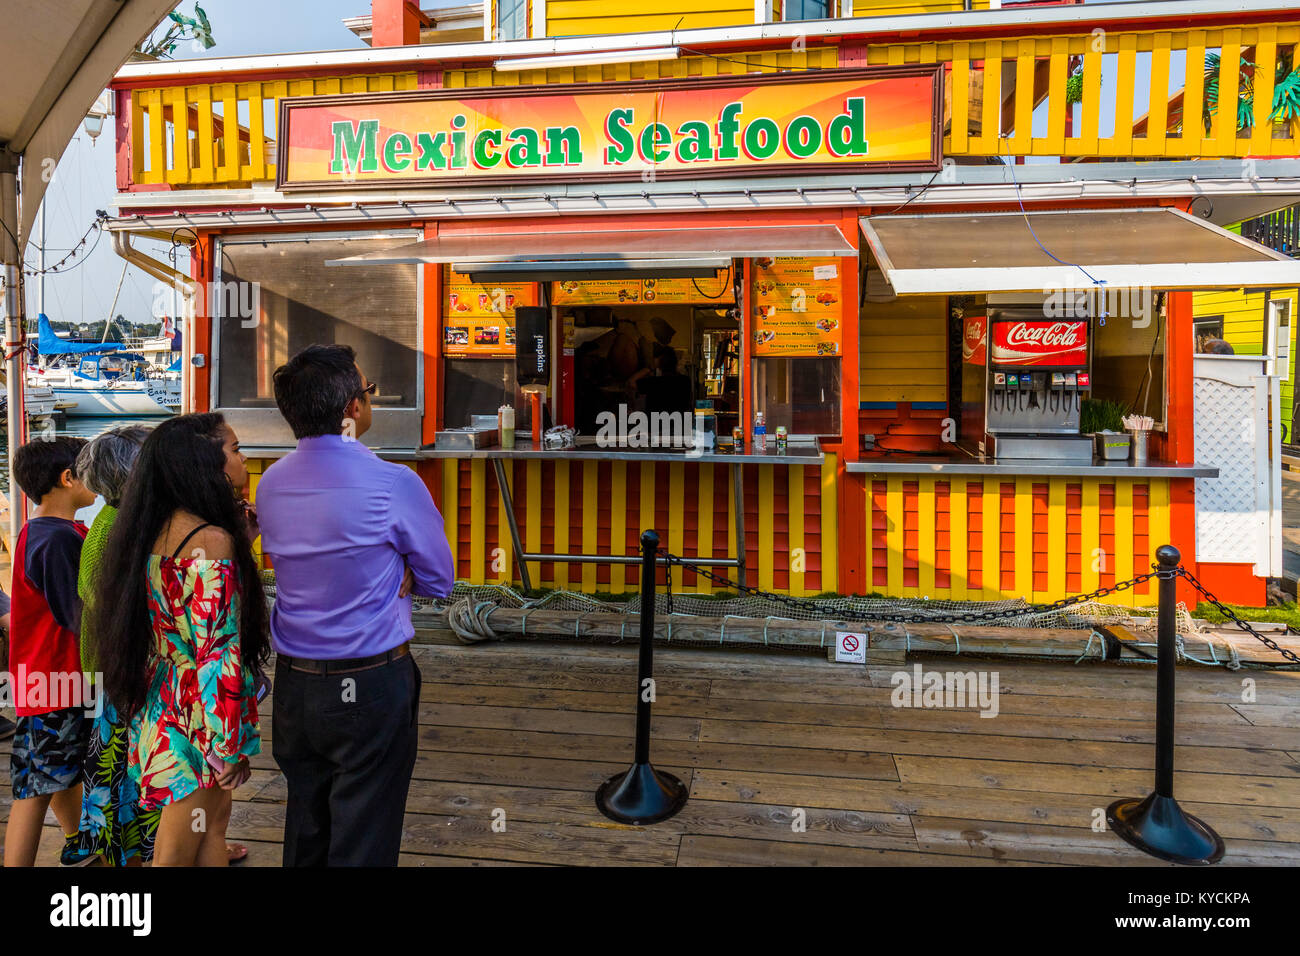 Fruits de mer mexicains sur Fisherman's Wharf de Victoria Canada une attraction touristique avec des kiosques de nourriture, de boutiques uniques et de maisons flottantes ou houseboats Banque D'Images